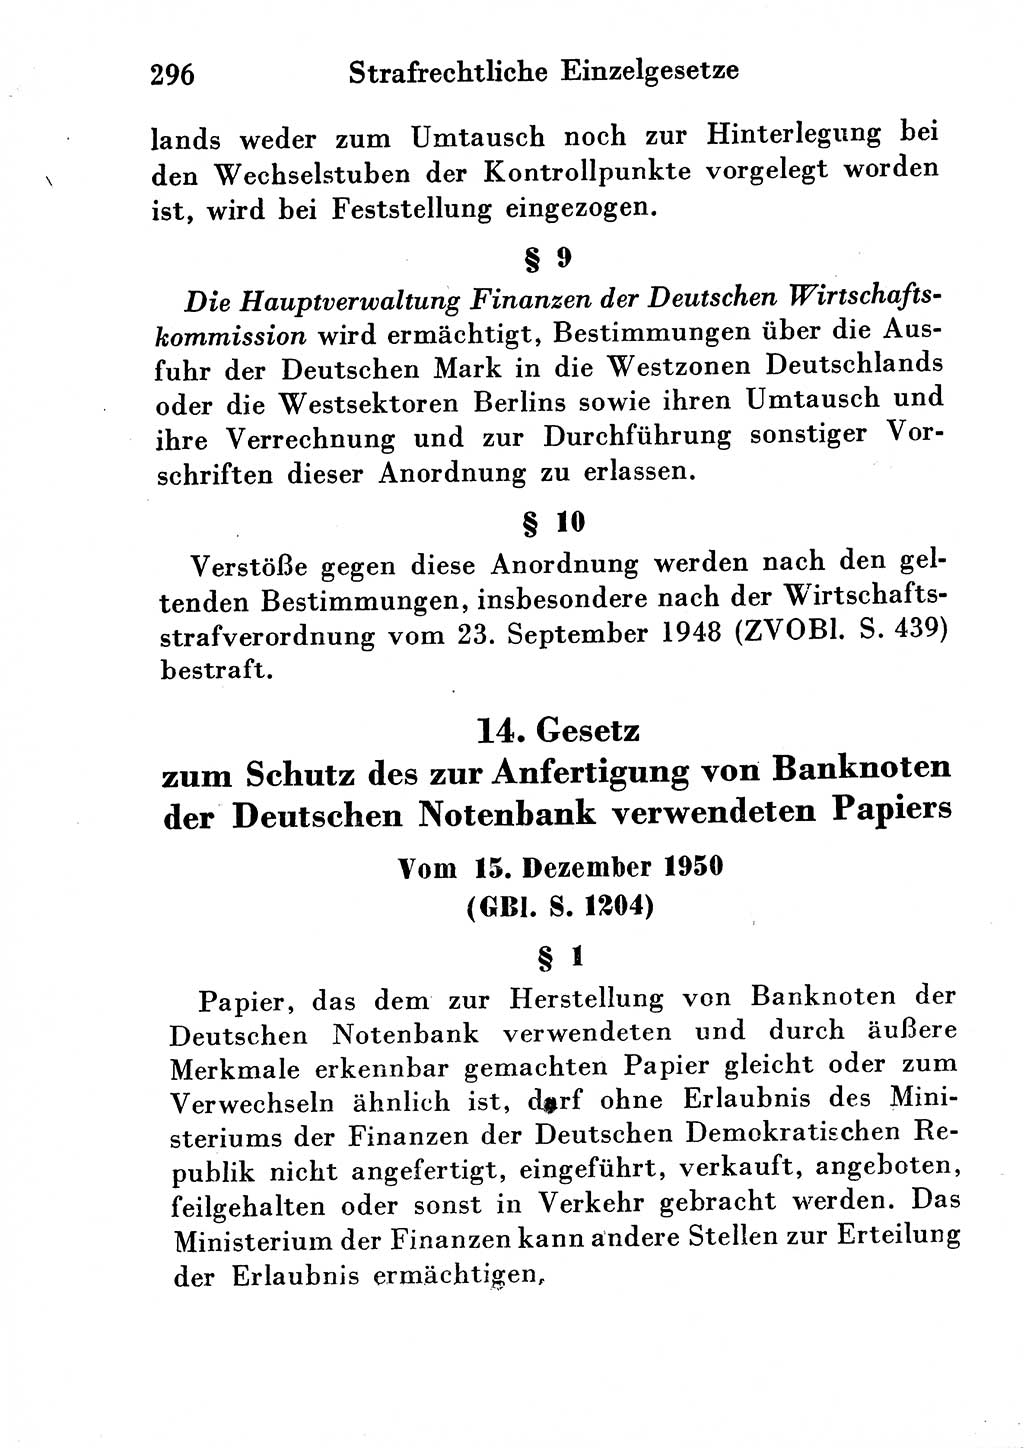 Strafgesetzbuch (StGB) und andere Strafgesetze [Deutsche Demokratische Republik (DDR)] 1954, Seite 296 (StGB Strafges. DDR 1954, S. 296)